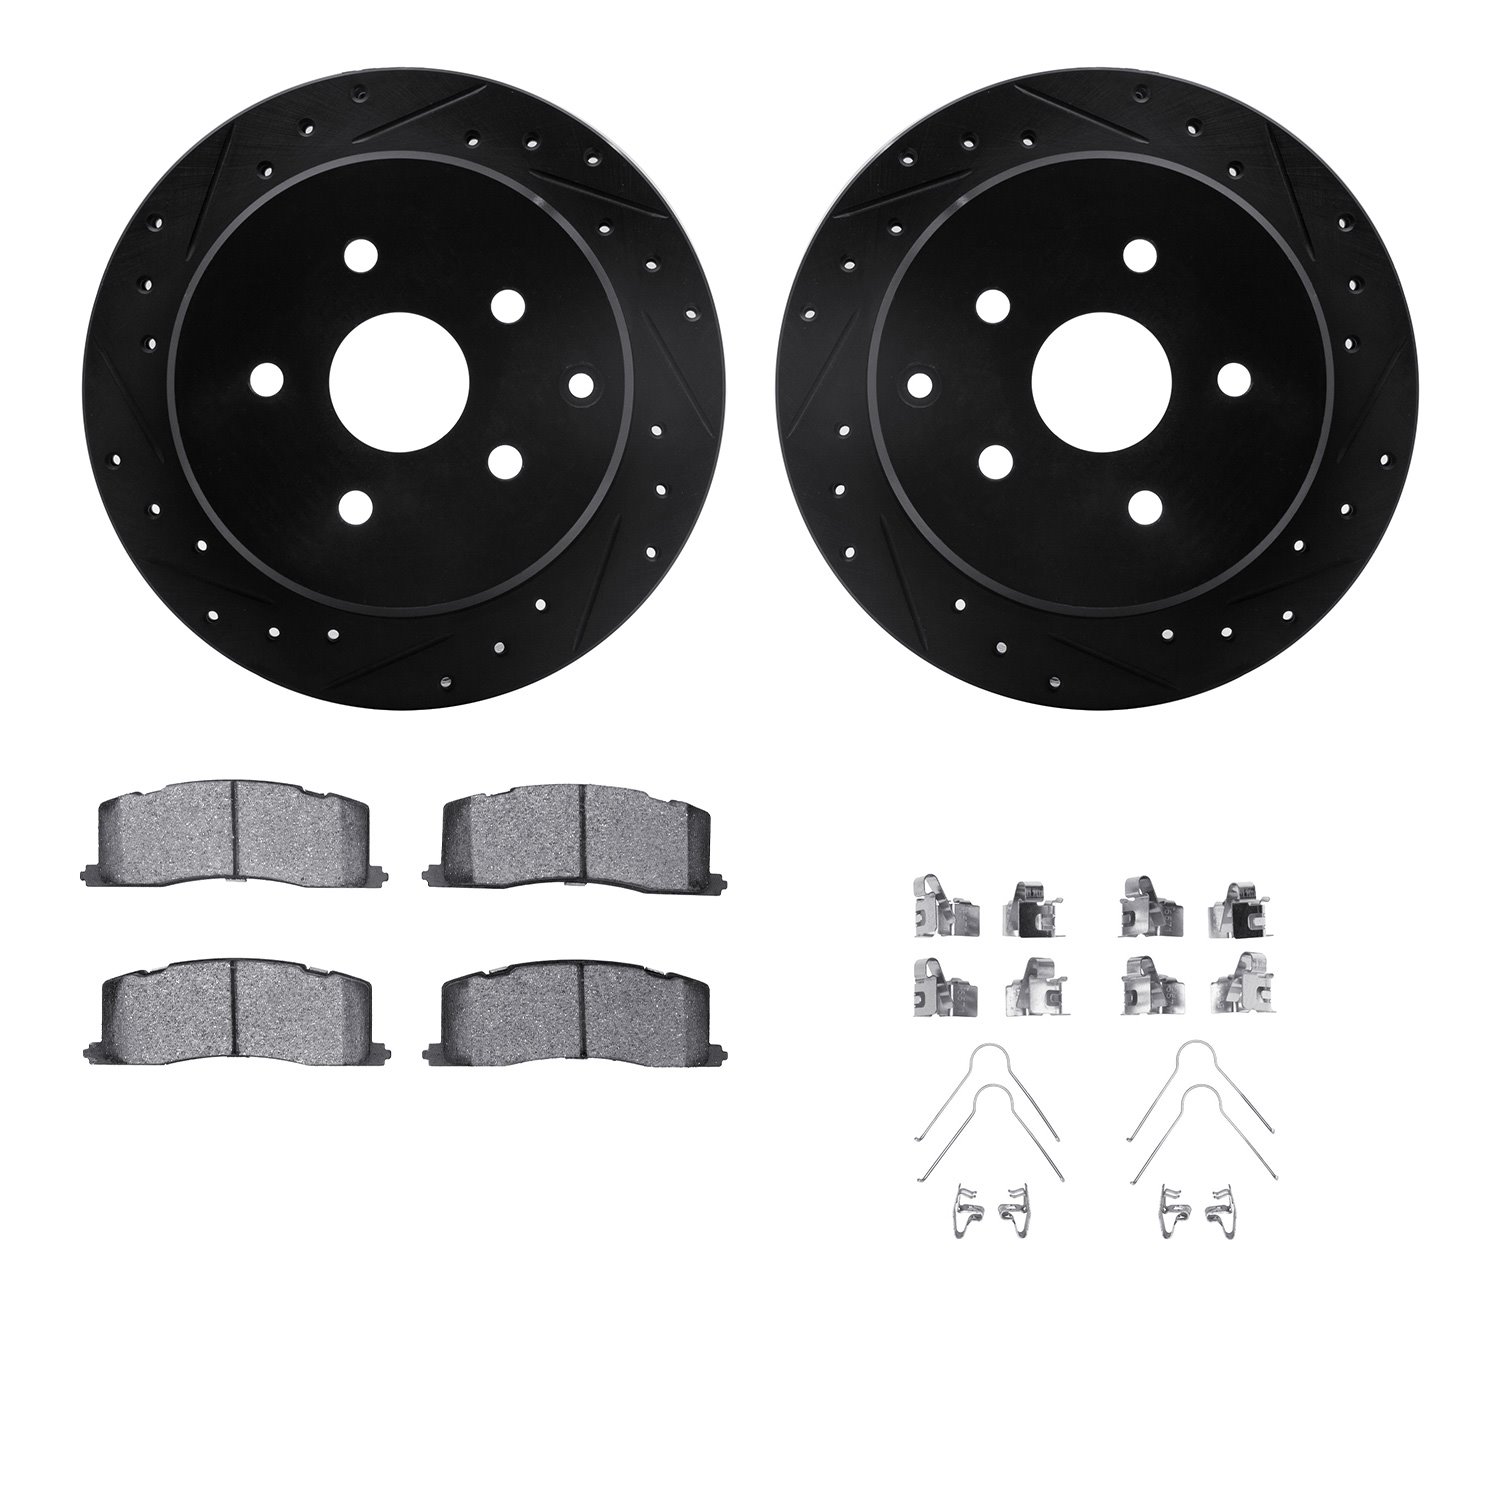 8312-76086 Drilled/Slotted Brake Rotors with 3000-Series Ceramic Brake Pads Kit & Hardware [Black], 1991-1997 Lexus/Toyota/Scion